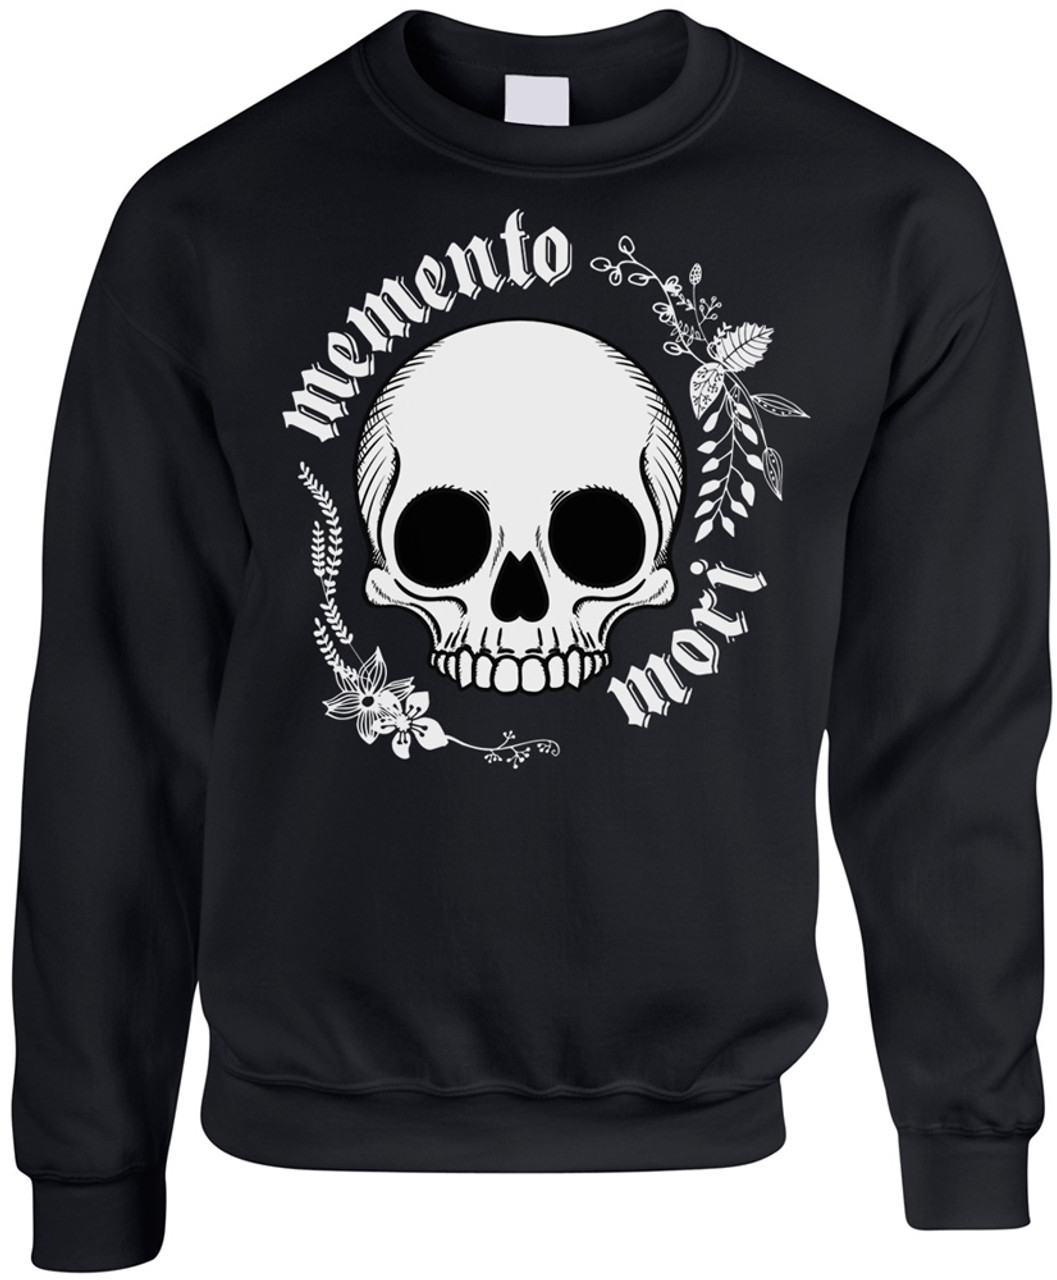 “Memento Mori“ Black Crewneck Sweatshirt